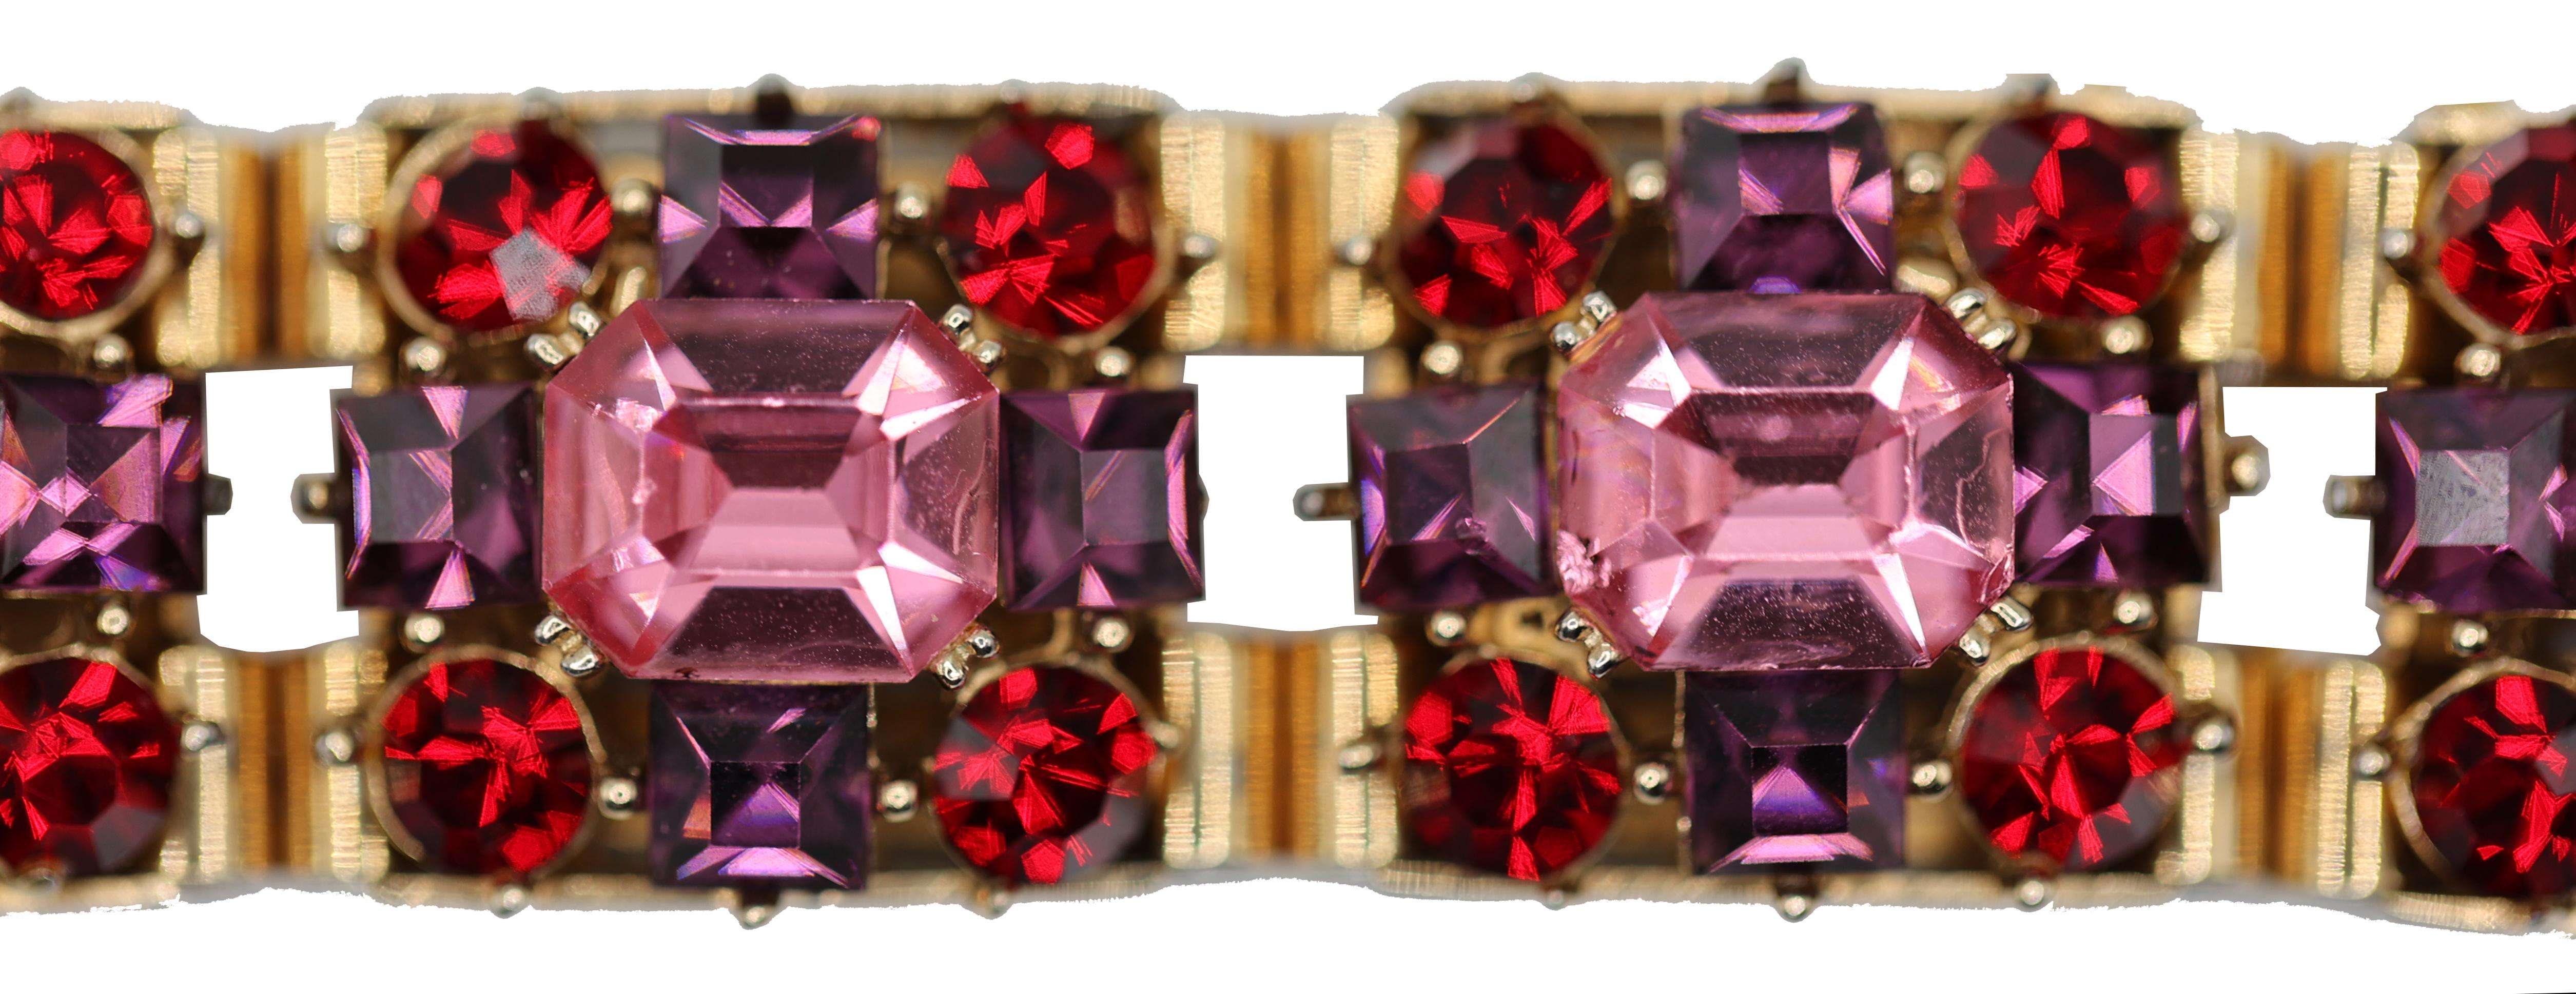 1950's Rare Austrian Crystal Collectible Bracelet

Dieses atemberaubende Armband in österreichischem Kristall besteht aus 7 großen, tiefrosa Kristallen im Smaragd-Schliff, die jeweils von 4 runden, rubinroten Kristallen und 4 quadratischen,